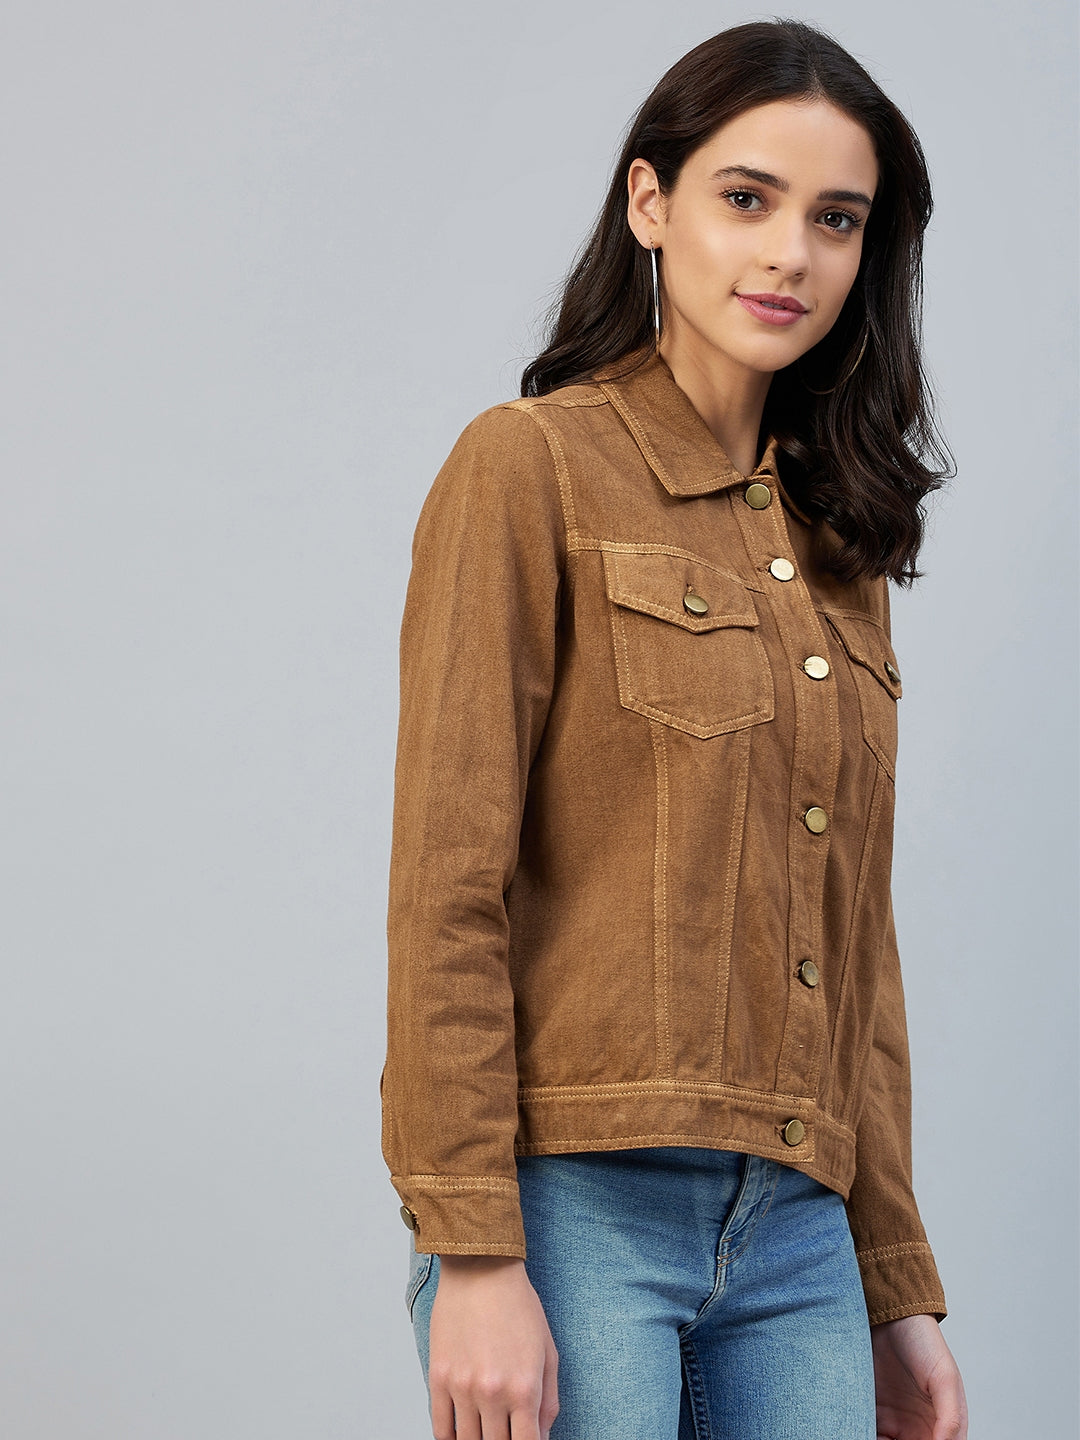 Women's Brown Cotton Twill Jacket